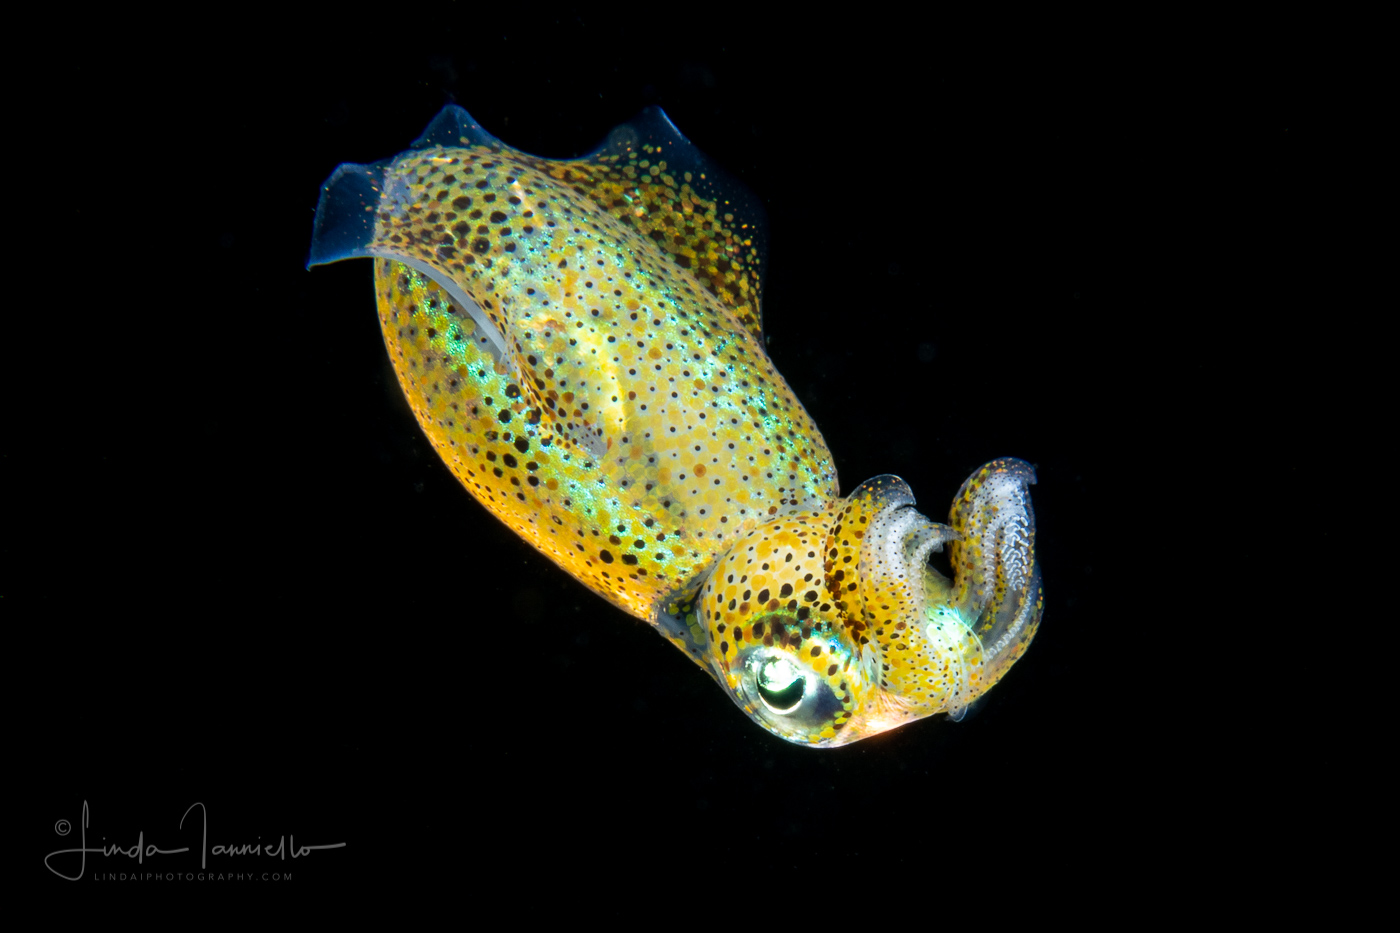 Bigfin Reef Squid - Depioteuthis lesdoniana - Juvenile